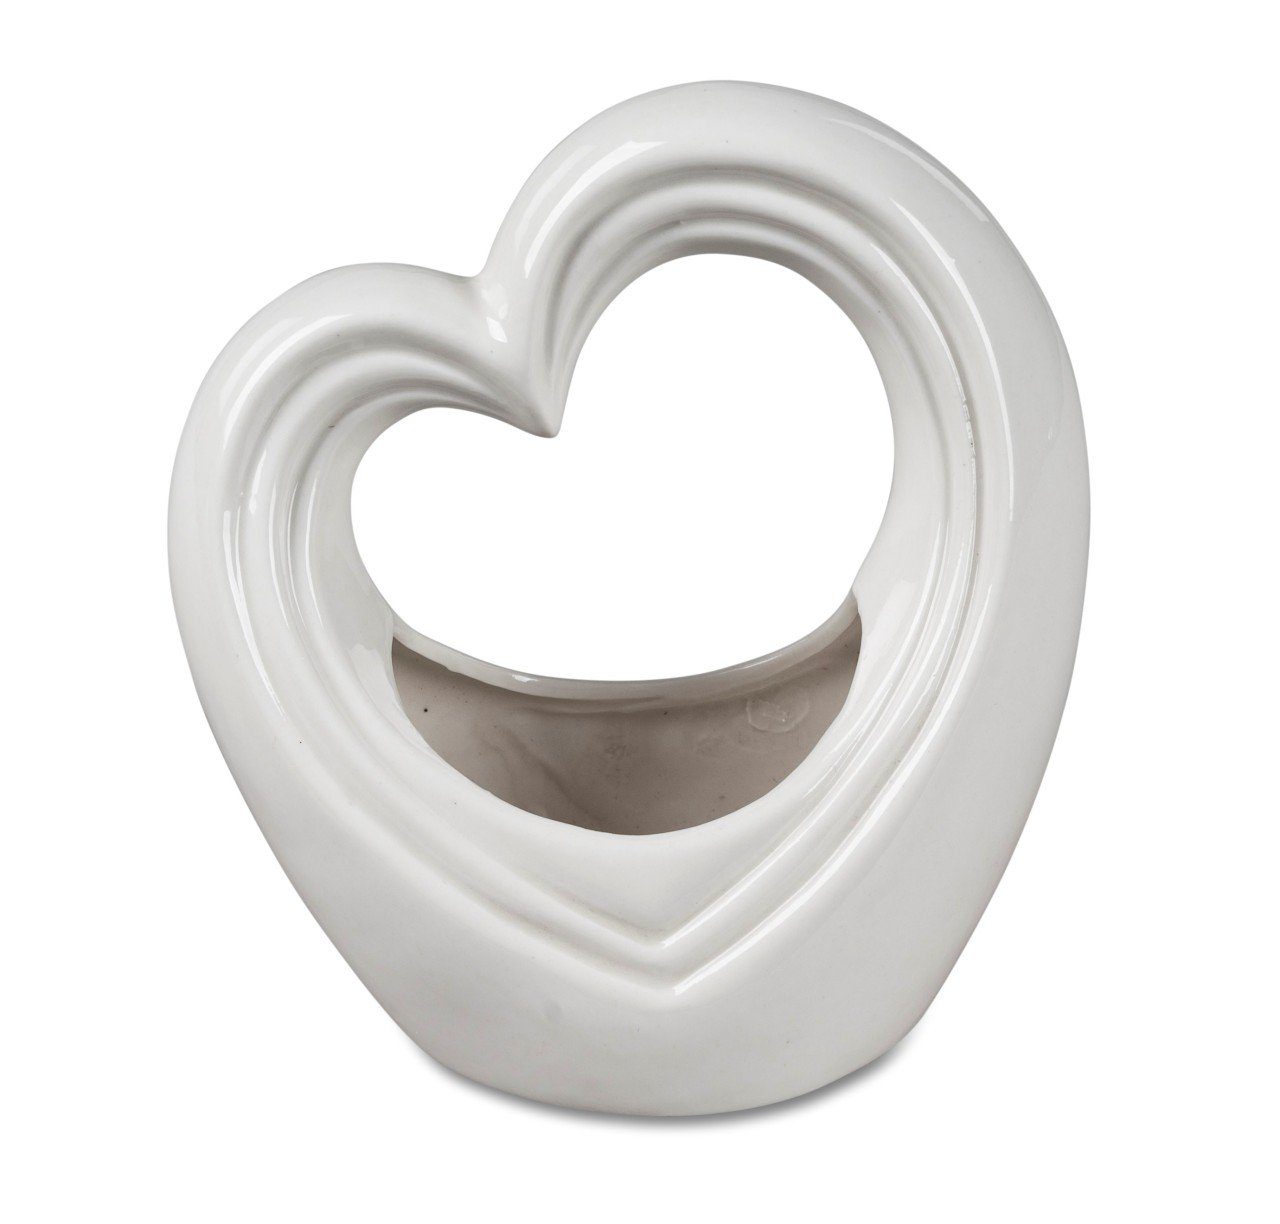 Hearts, Tischvase H:15cm formano Weiß Porzellan B:15cm